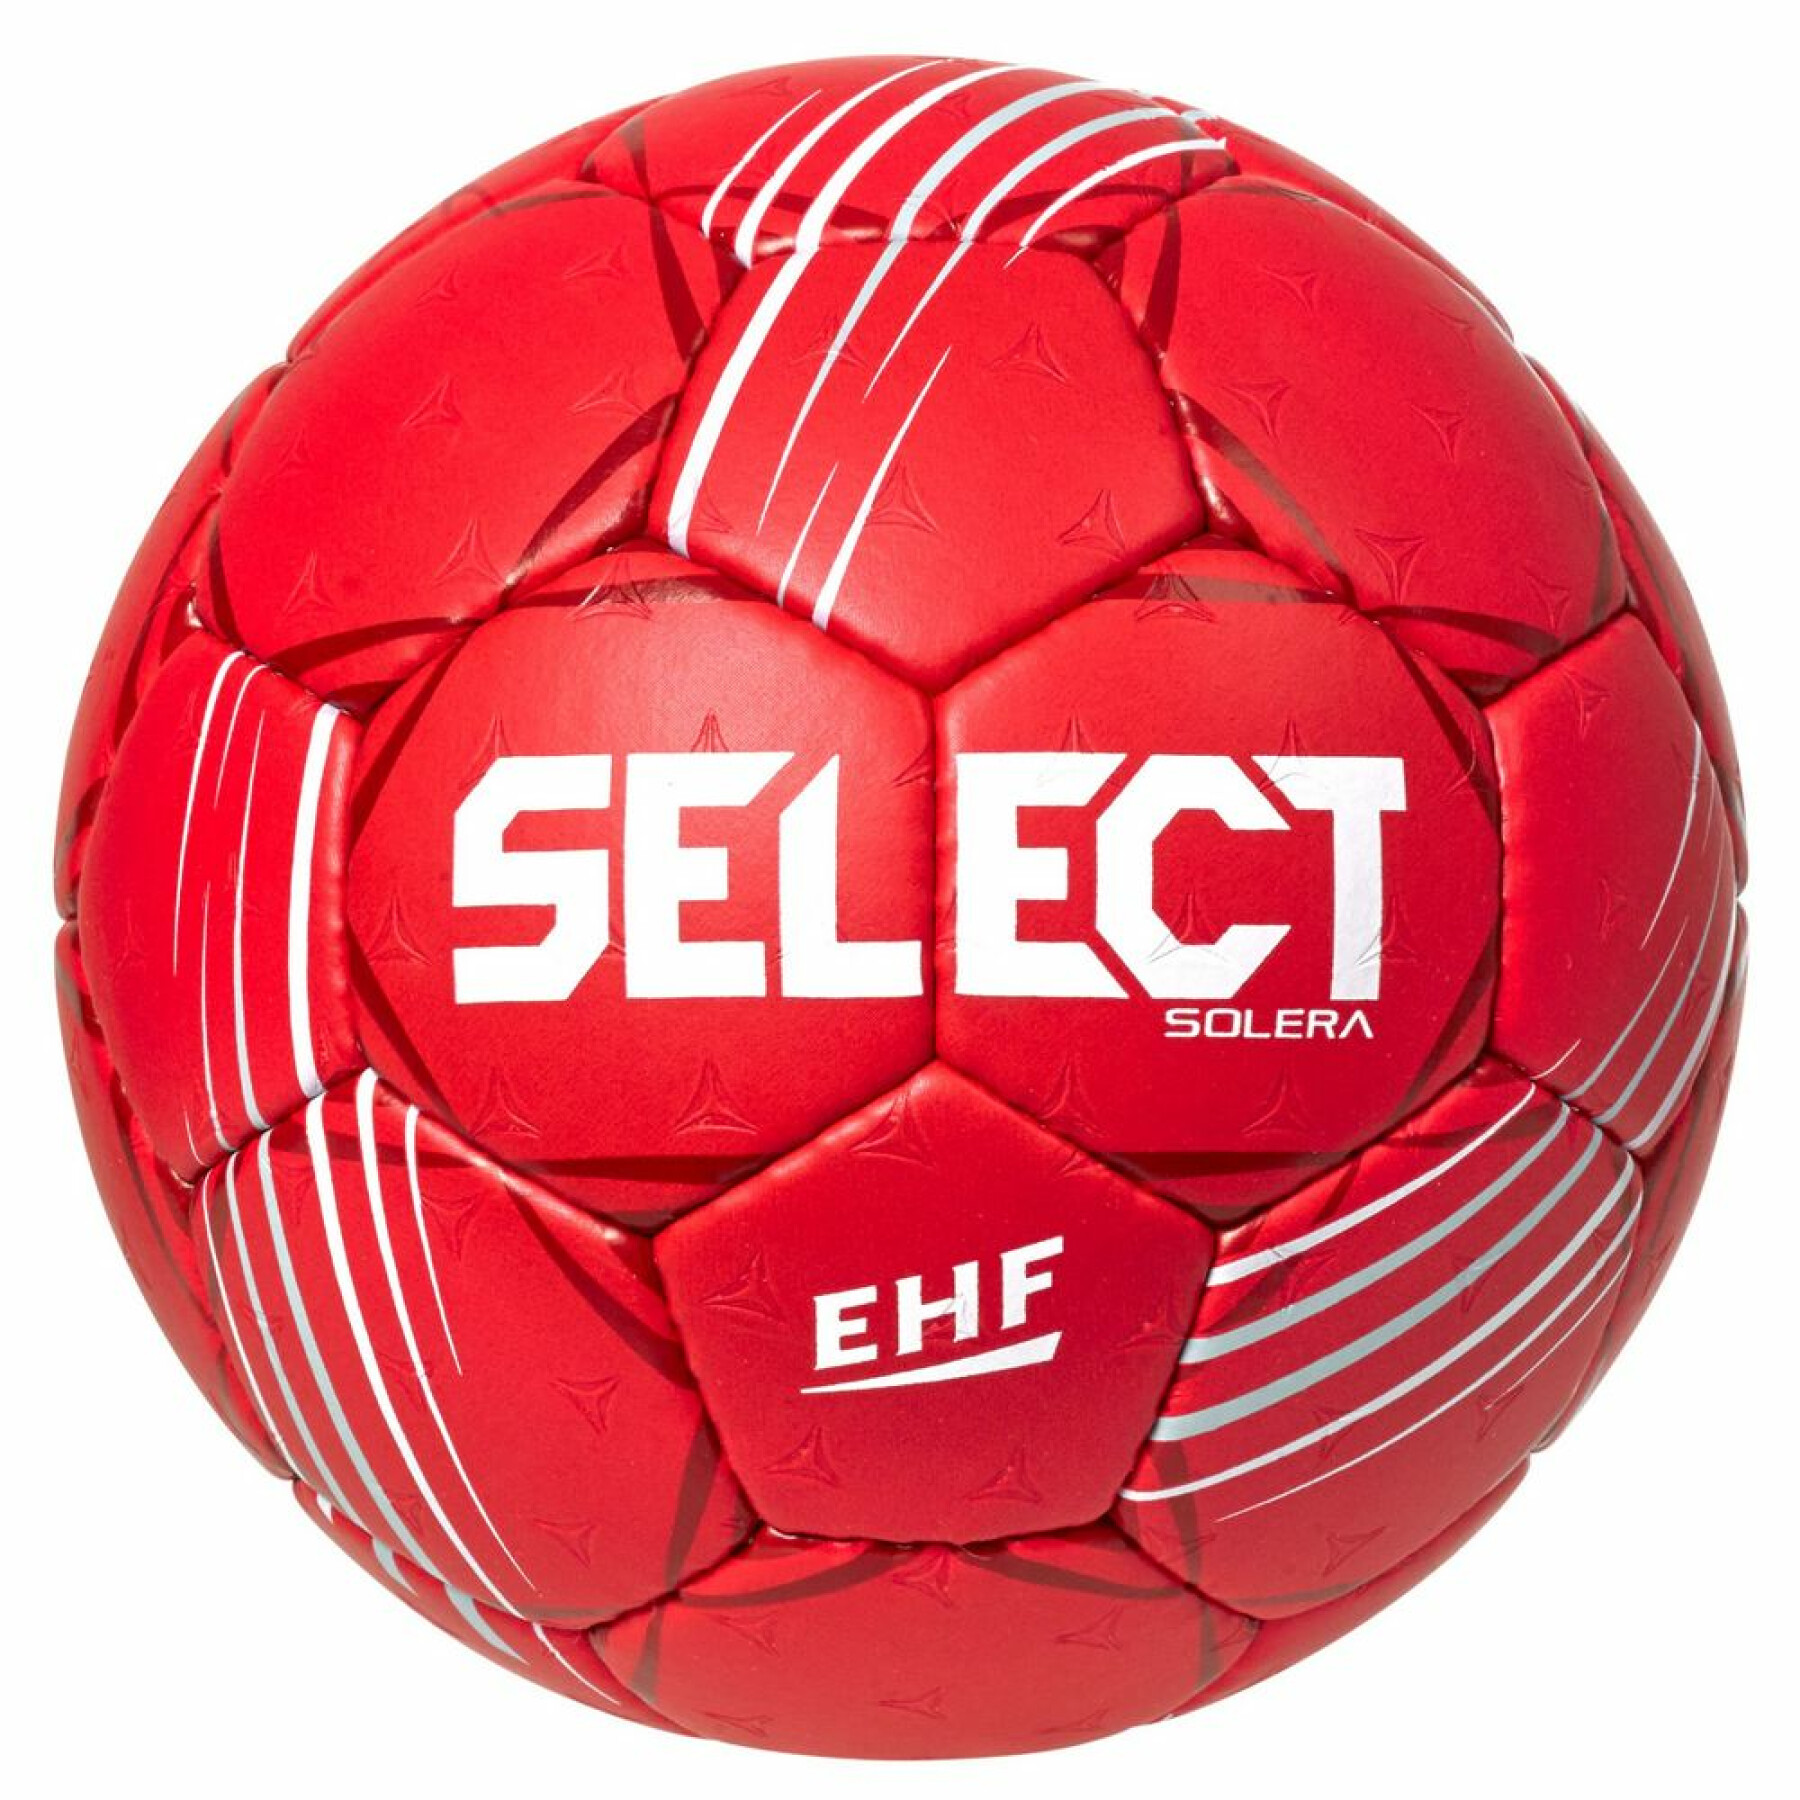 Handball Select Solera V22 - Training - Types - Handballs